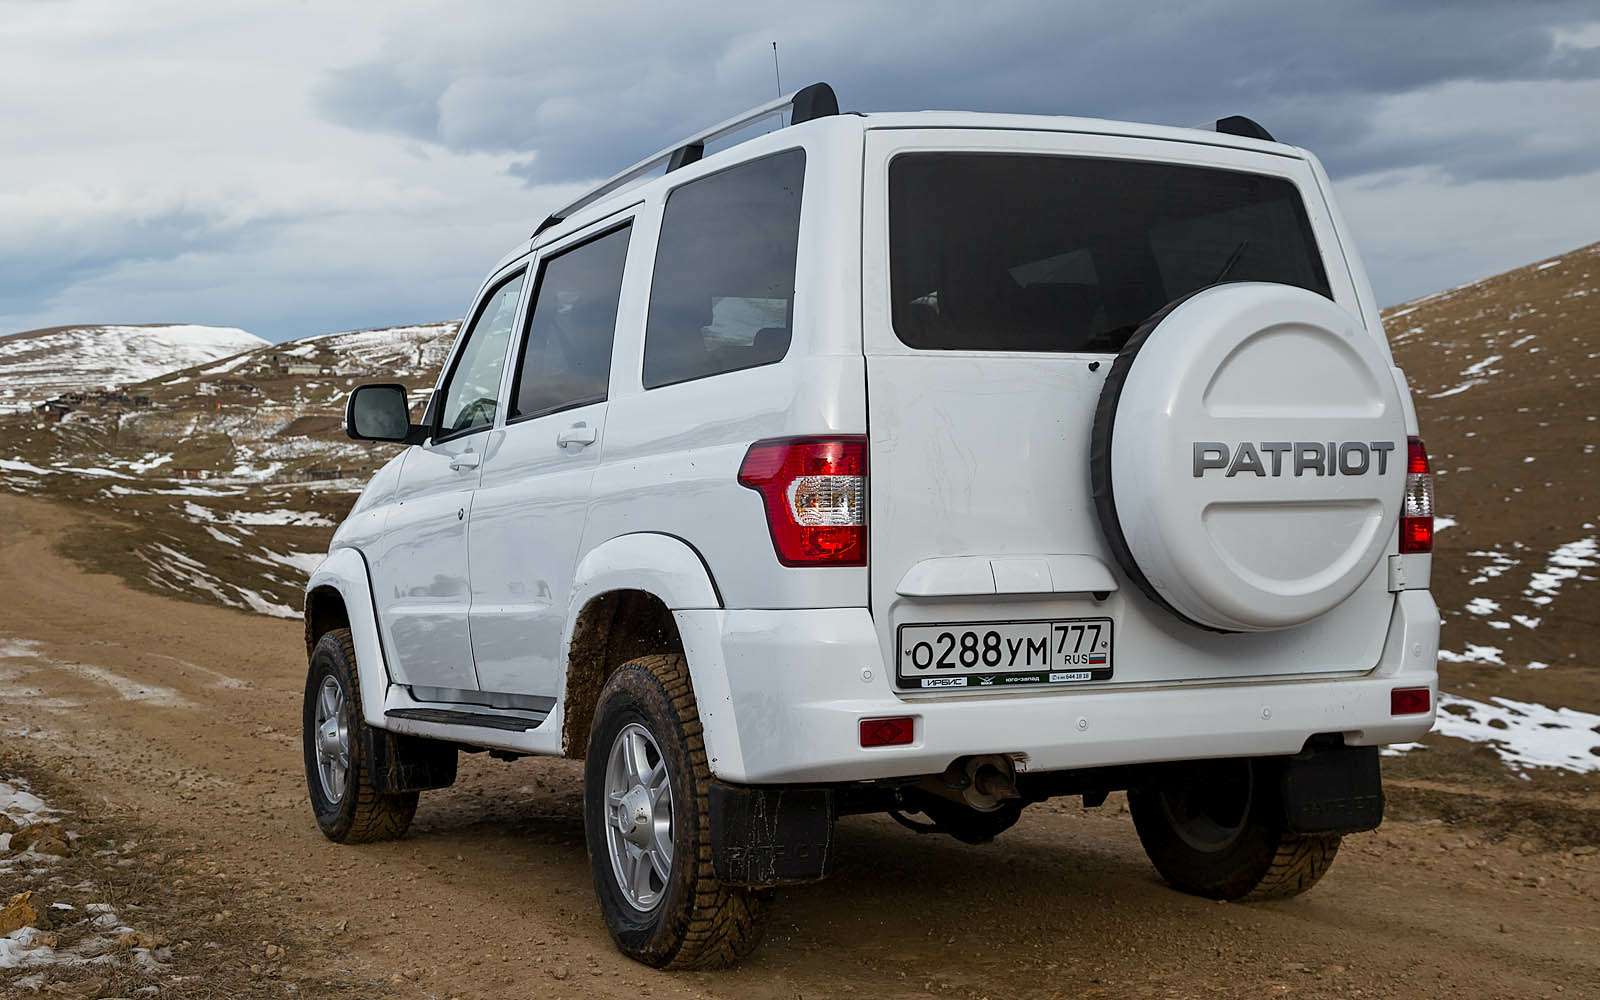 На автомобиле УАЗ Патриот запаска изначально размещена на двери багажника. Она всегда доступна, даже если автомобиль утонул в грязи или снегу по пороги.